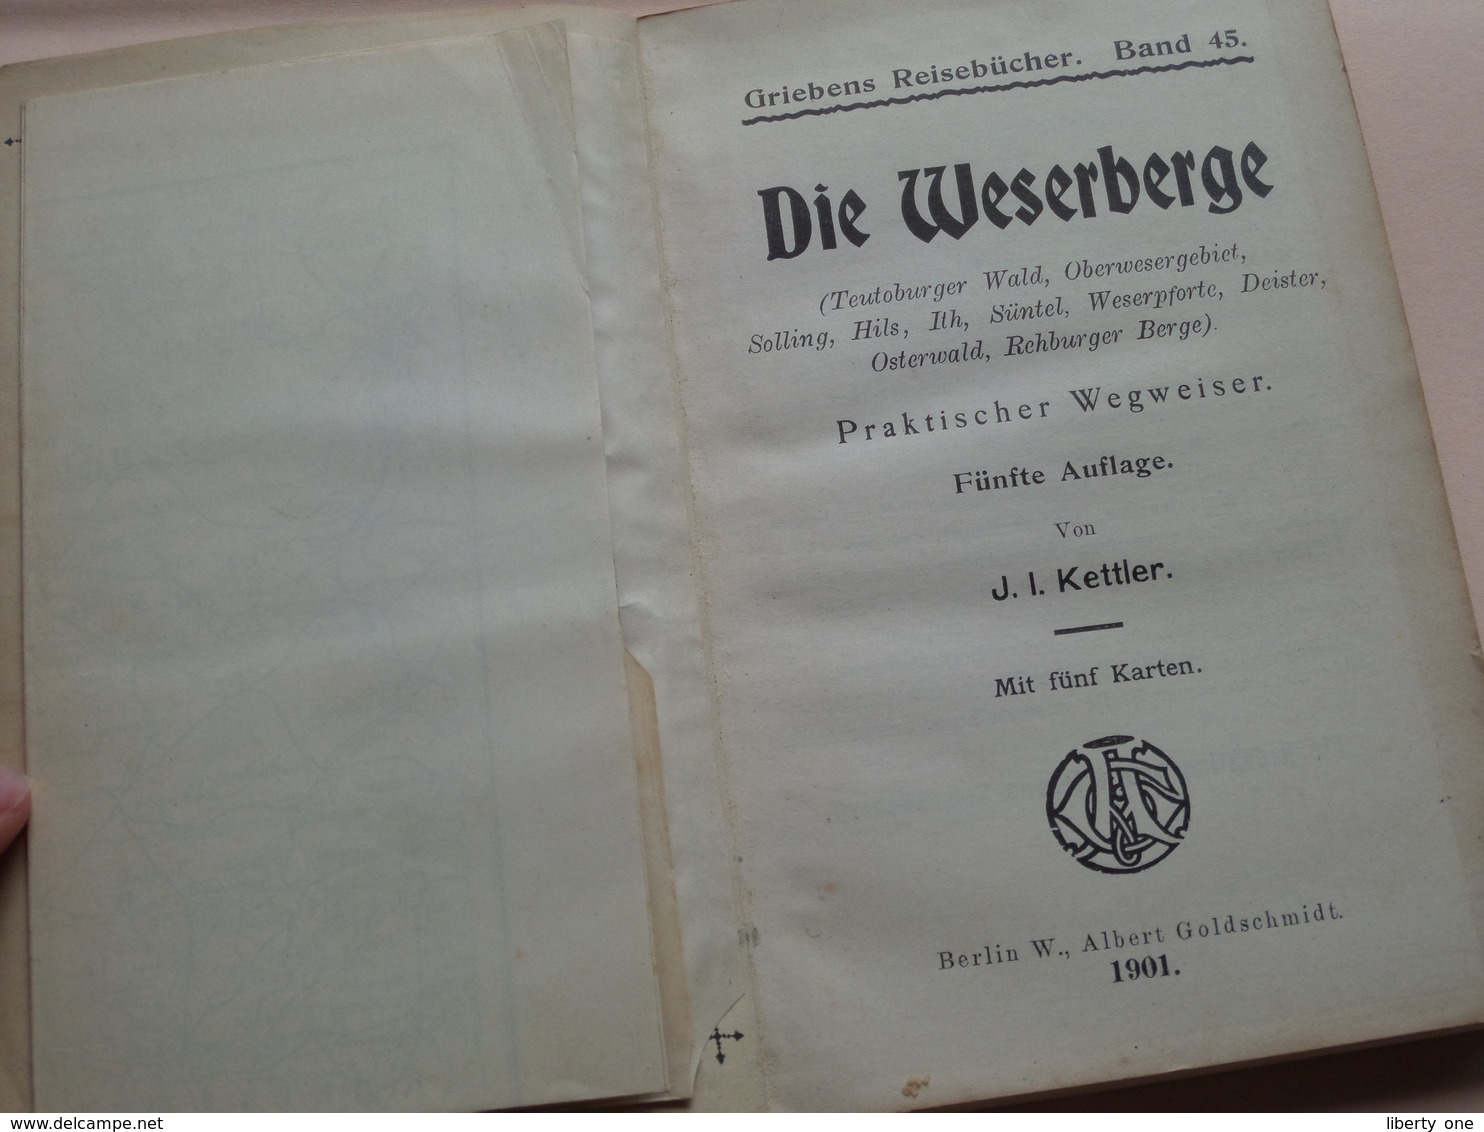 Griebens Reisebücher Band 45 - Die WESERBERGE ( Teutoburger ) Druk. A Seydel ( 168 + Funf Karte ) Auflage Funf - 1901 ! - Nordrhein-Westfalen